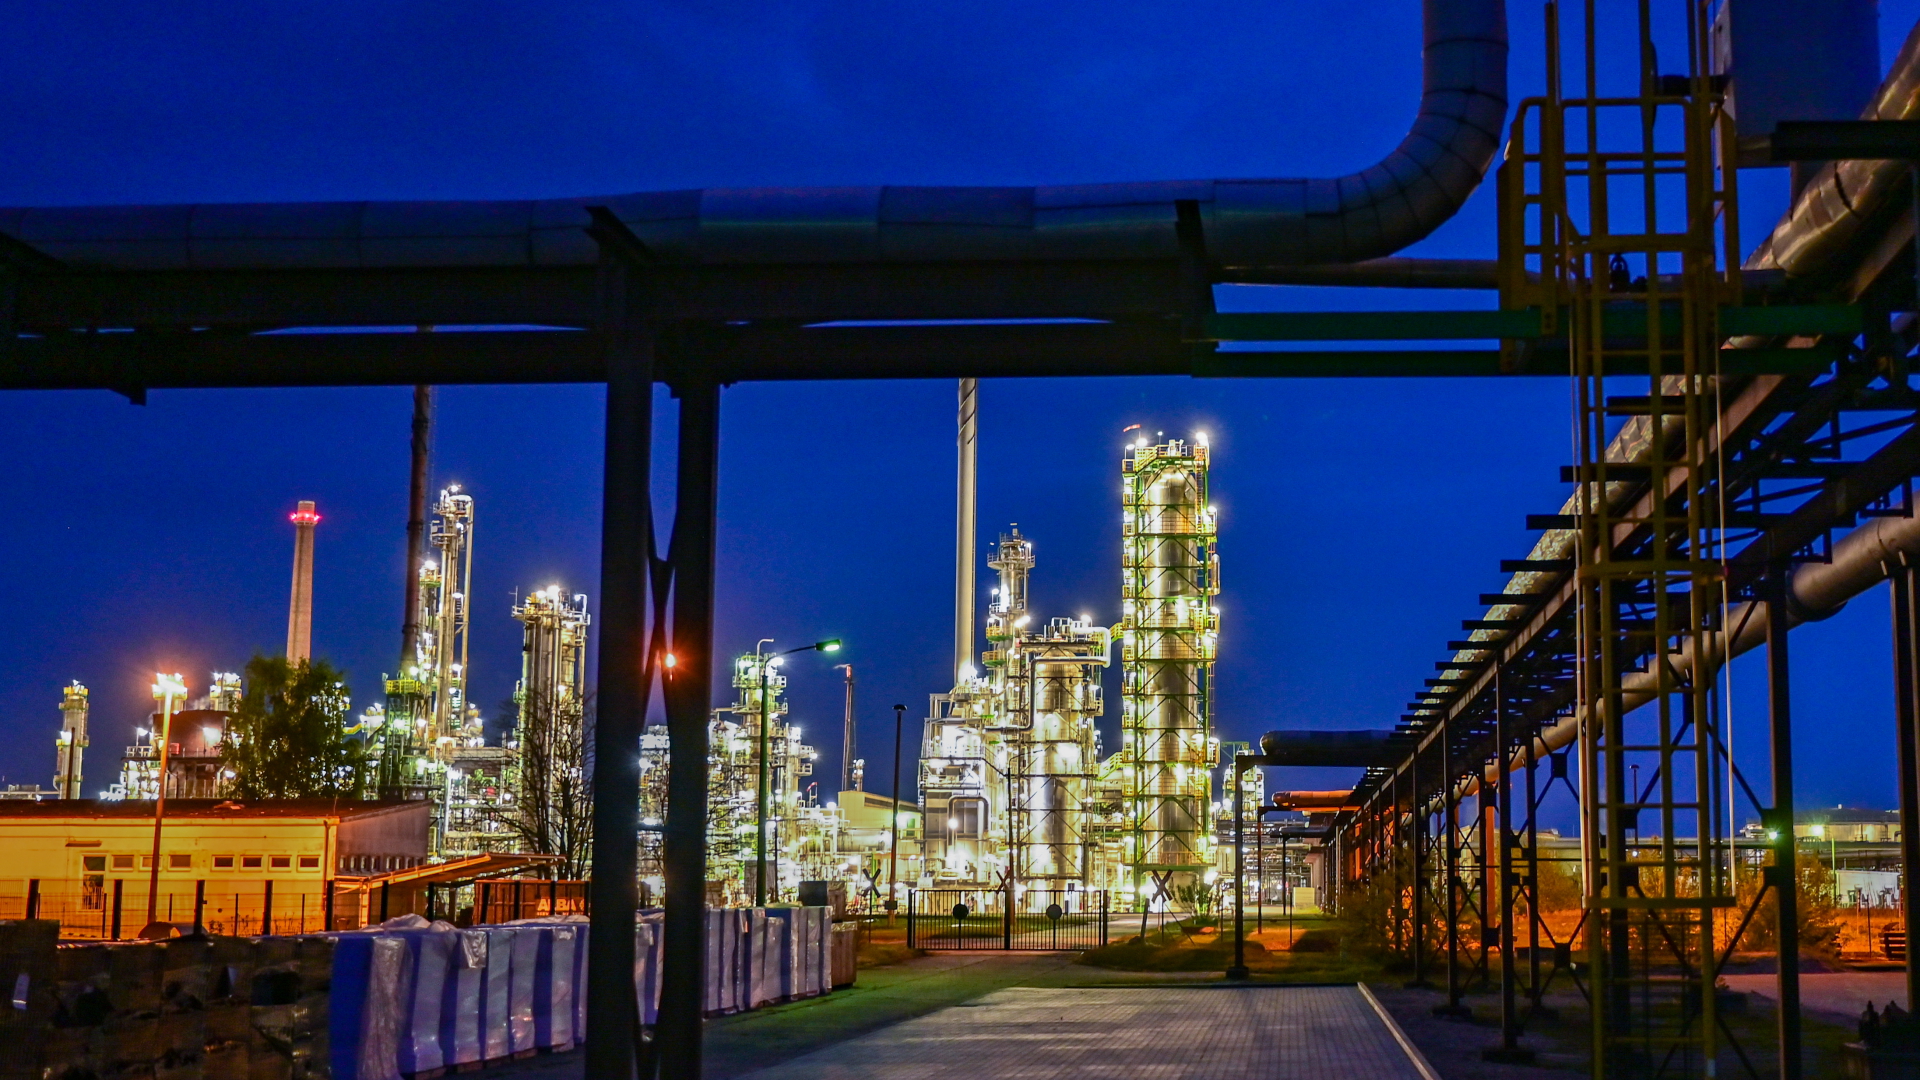 Die Anlagen der Erdölraffinerie auf dem Industriegelände der PCK-Raffinerie GmbH sind abends beleuchtet. | dpa